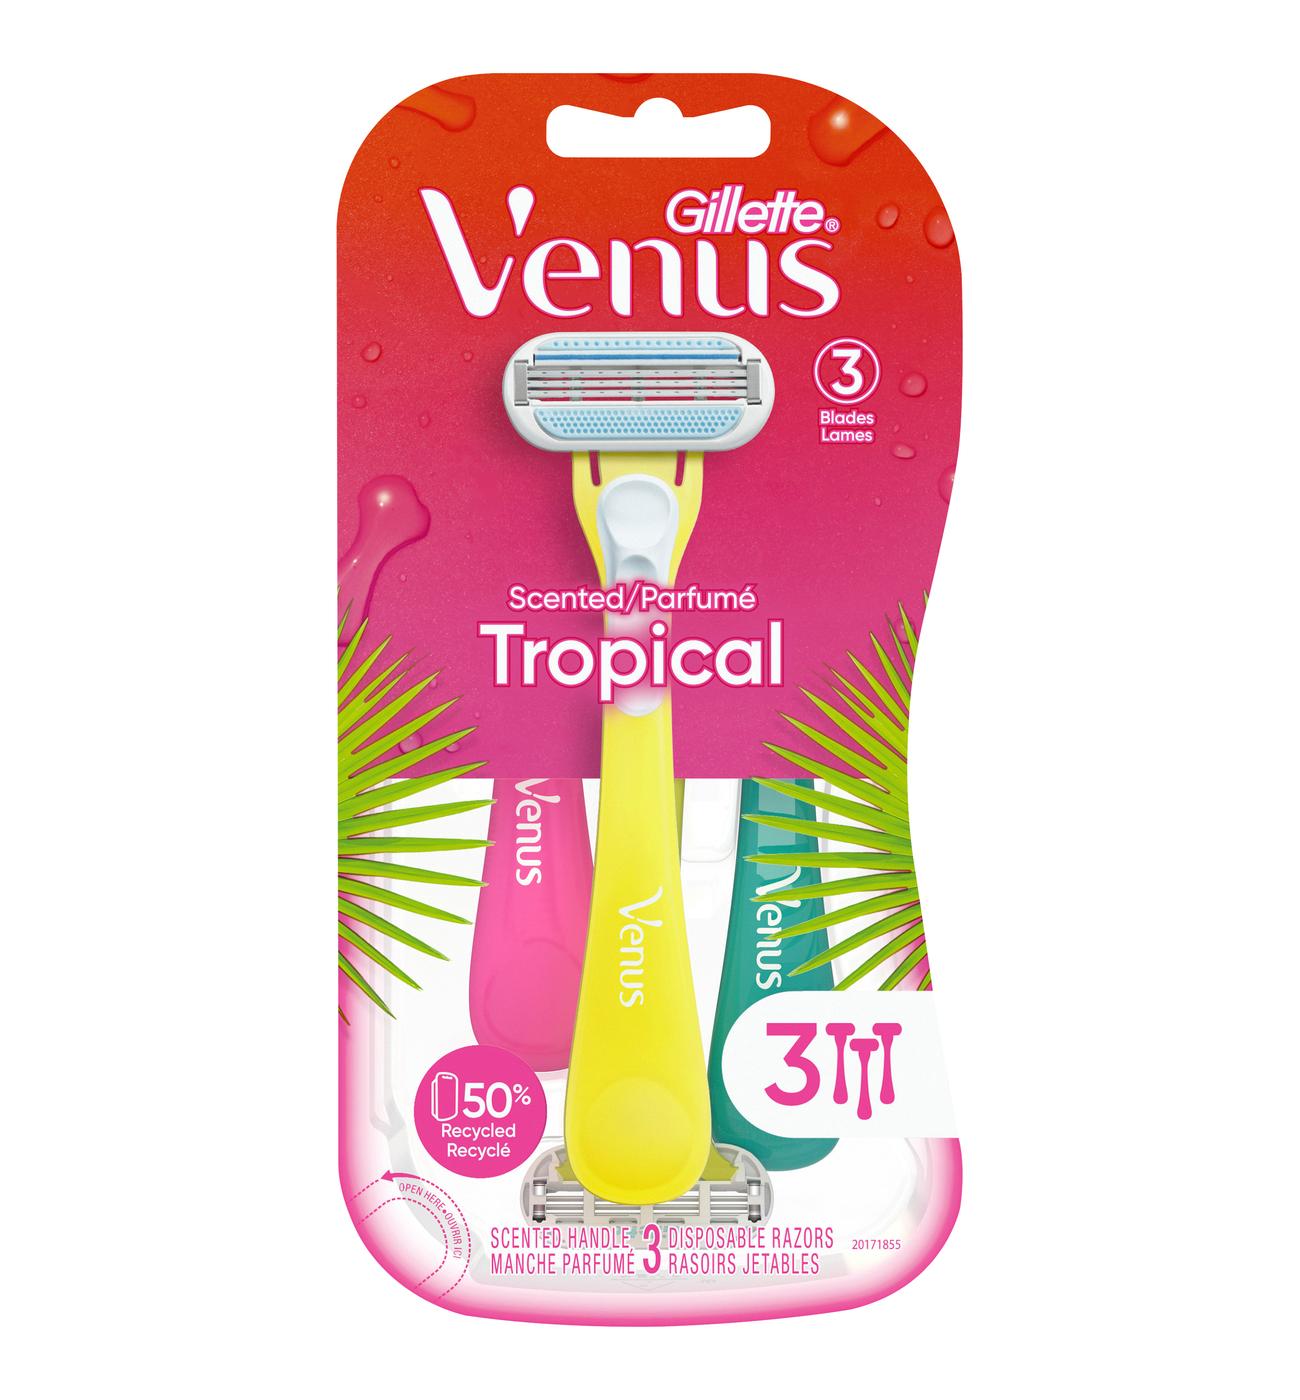 Gillette Venus Tropical Disposable Razors - Shop Razors & Blades